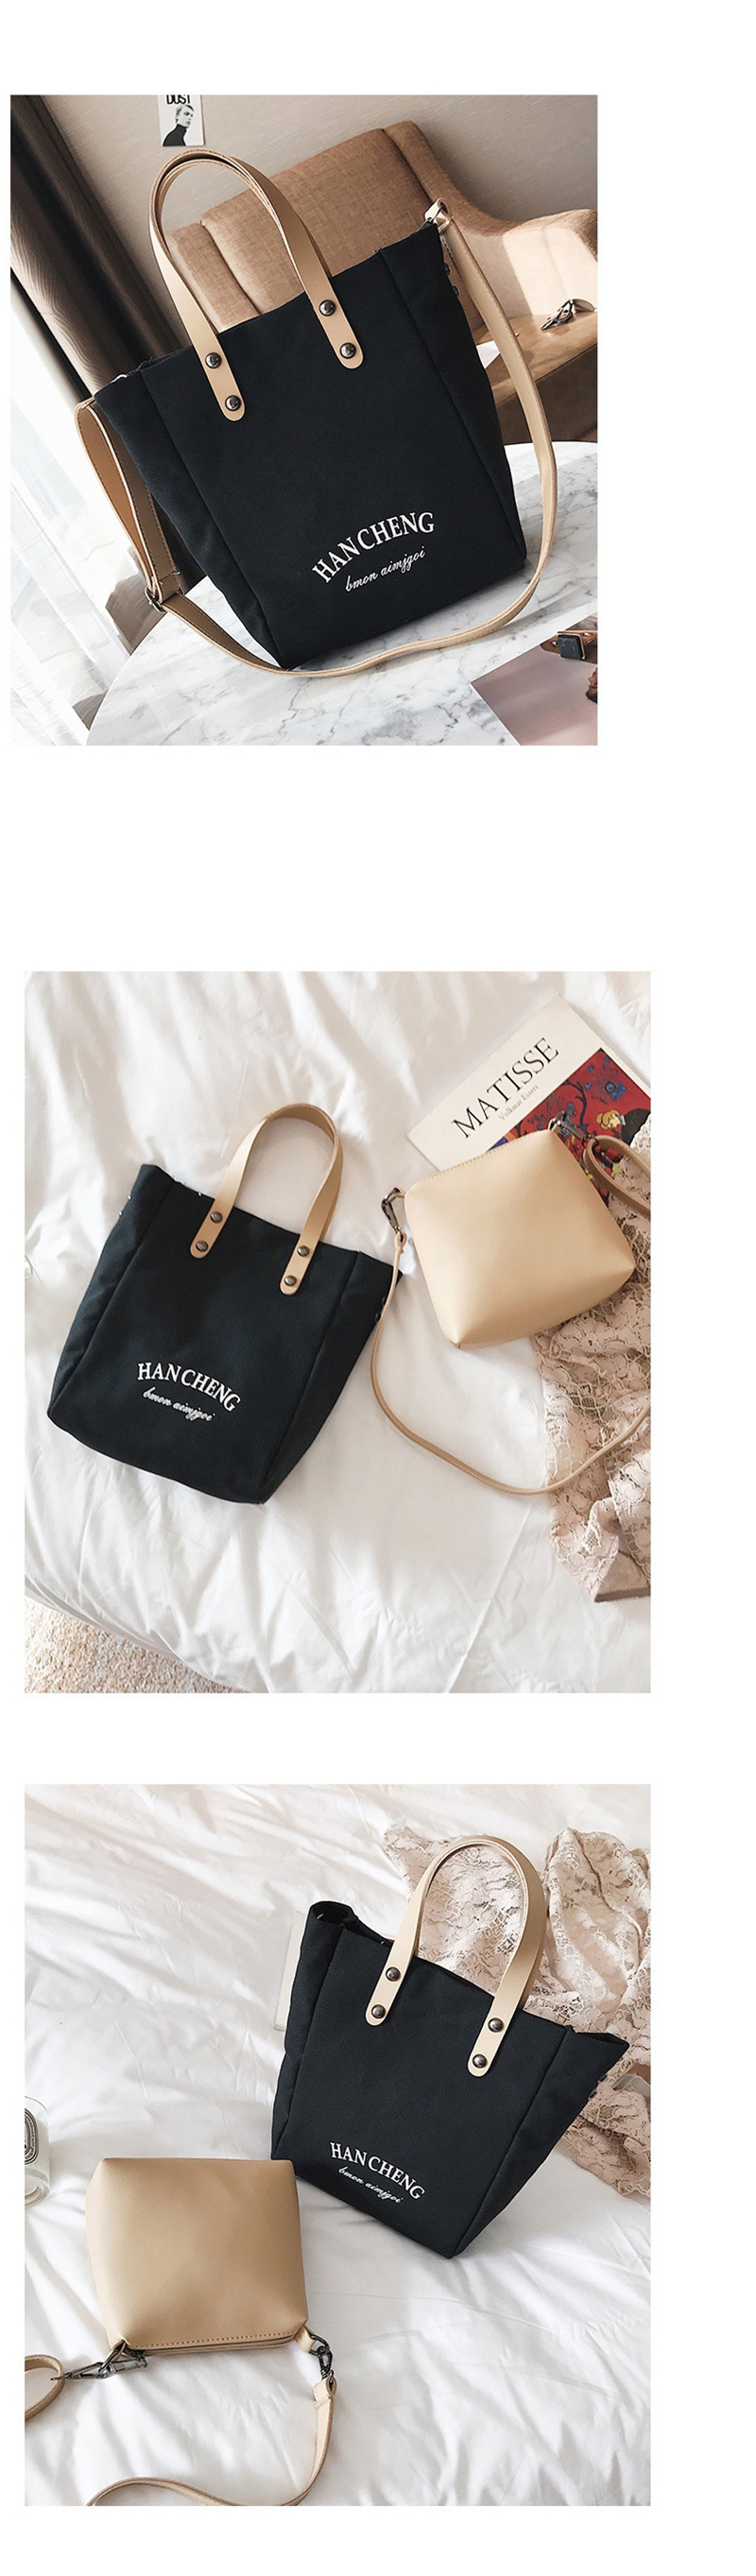 Fashion Black Canvas Shoulder Bag Shoulder Scorpion Mother Bag,Handbags